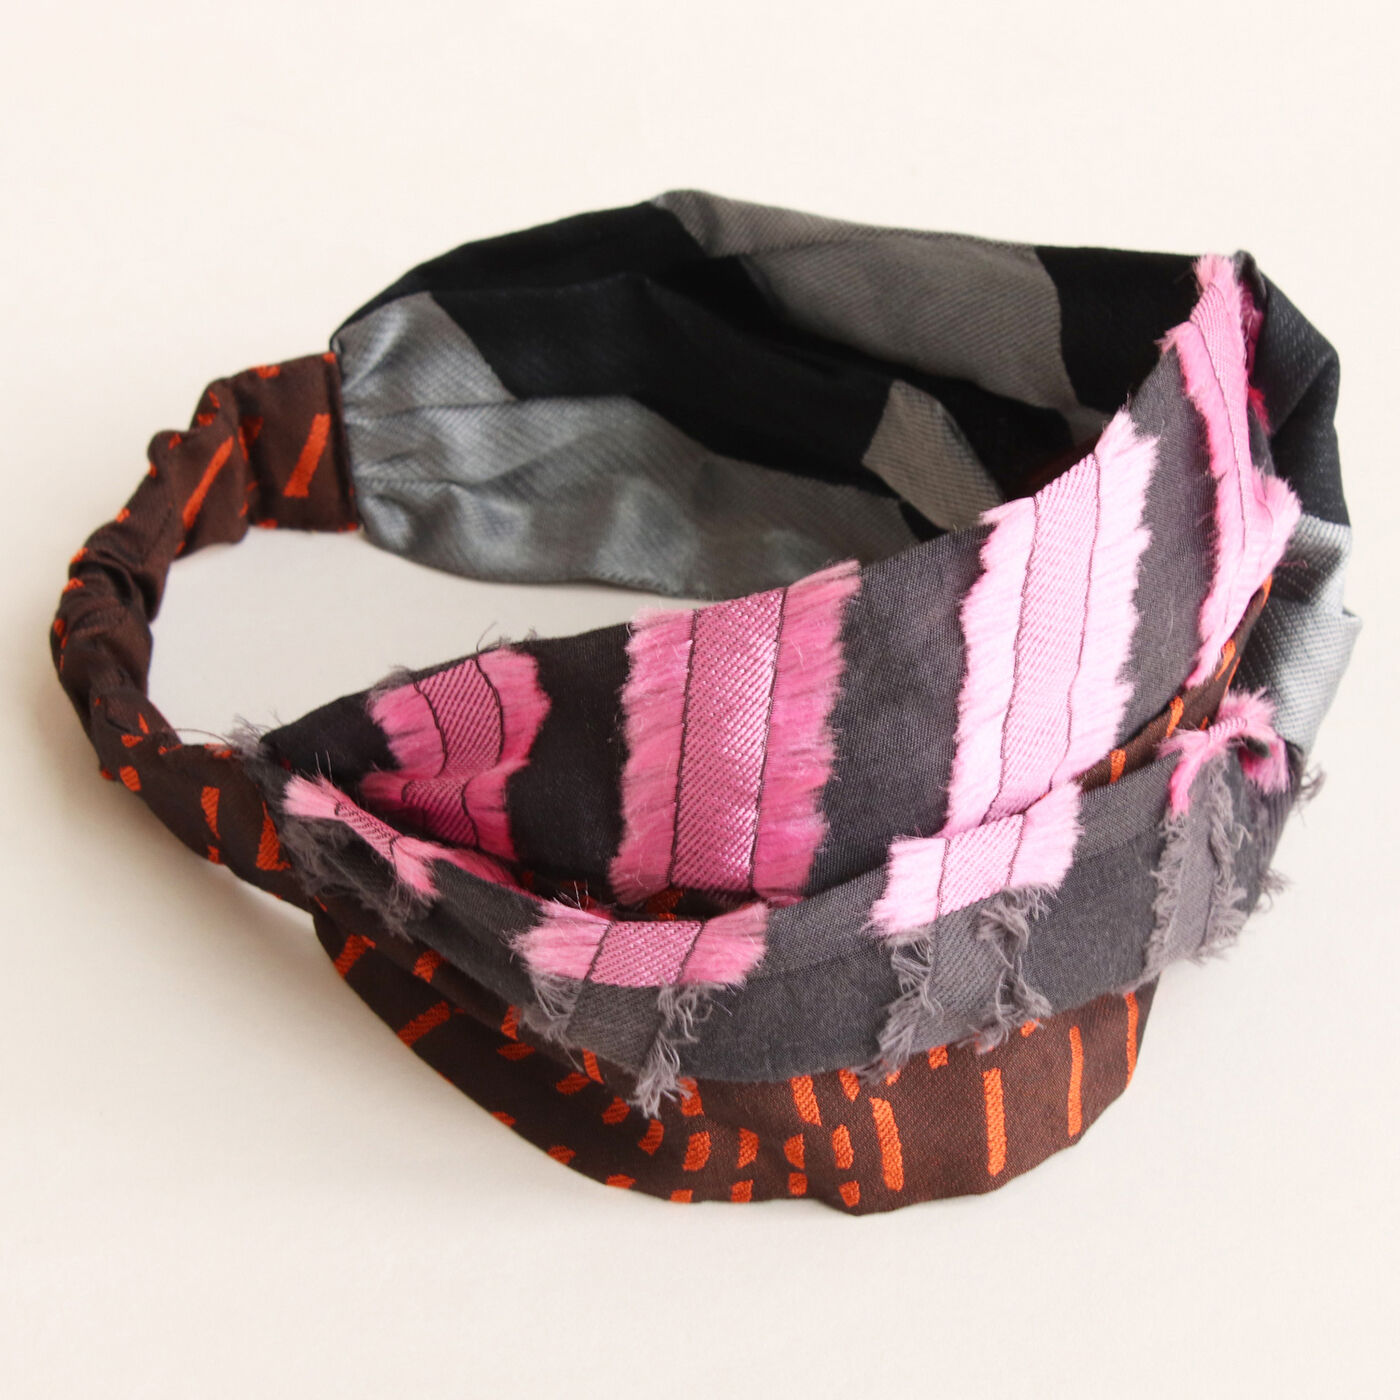 ＆Stories|テキスタイルデザイナーと作った　播州ジャカード織のヘアターバン〈ピンク×ブラウン〉[ヘアバンド：日本製]|ビビッドなピンクがアクセント。